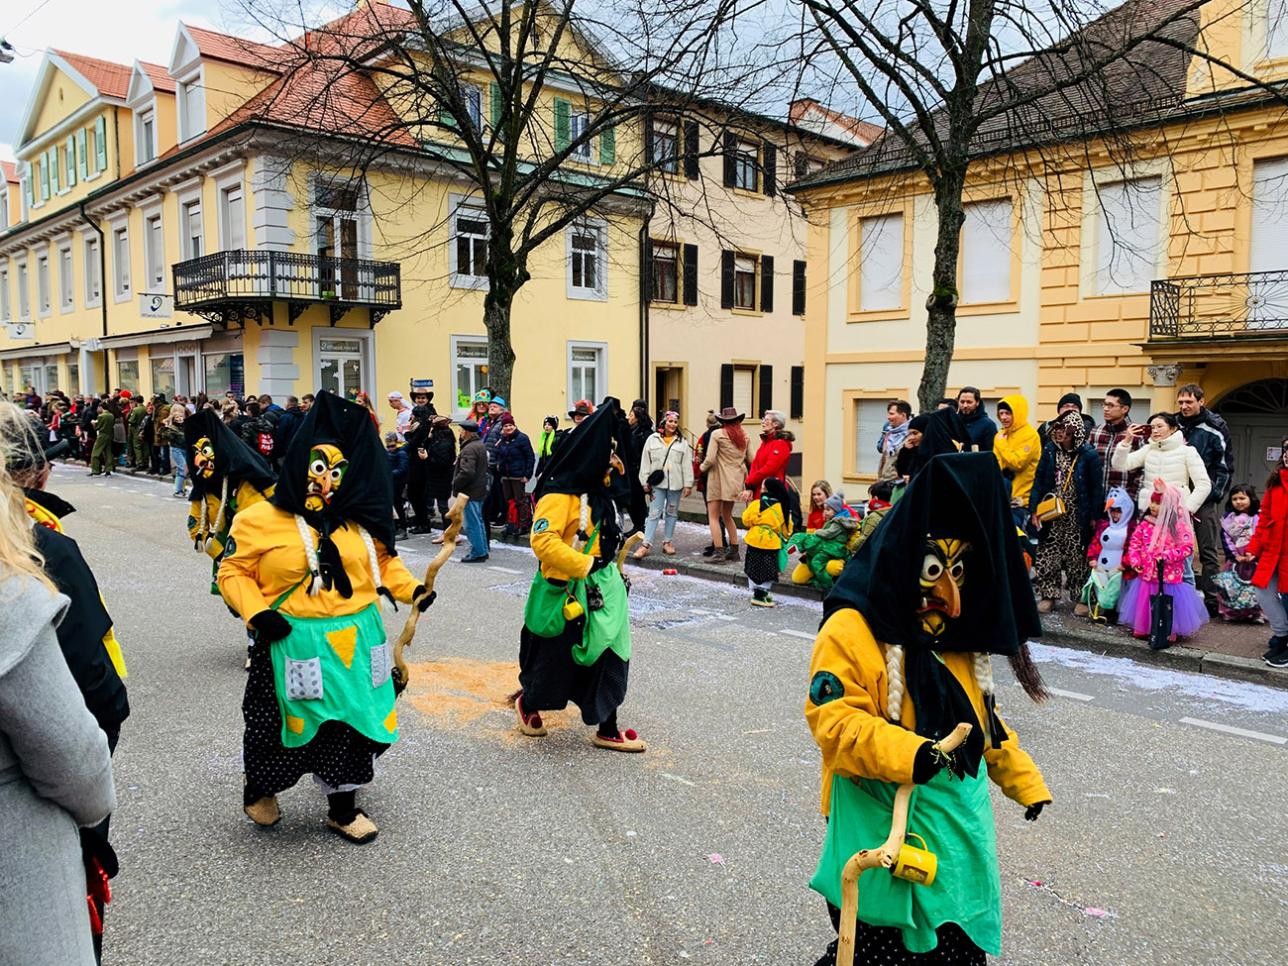 Carnival parade in Rastatt